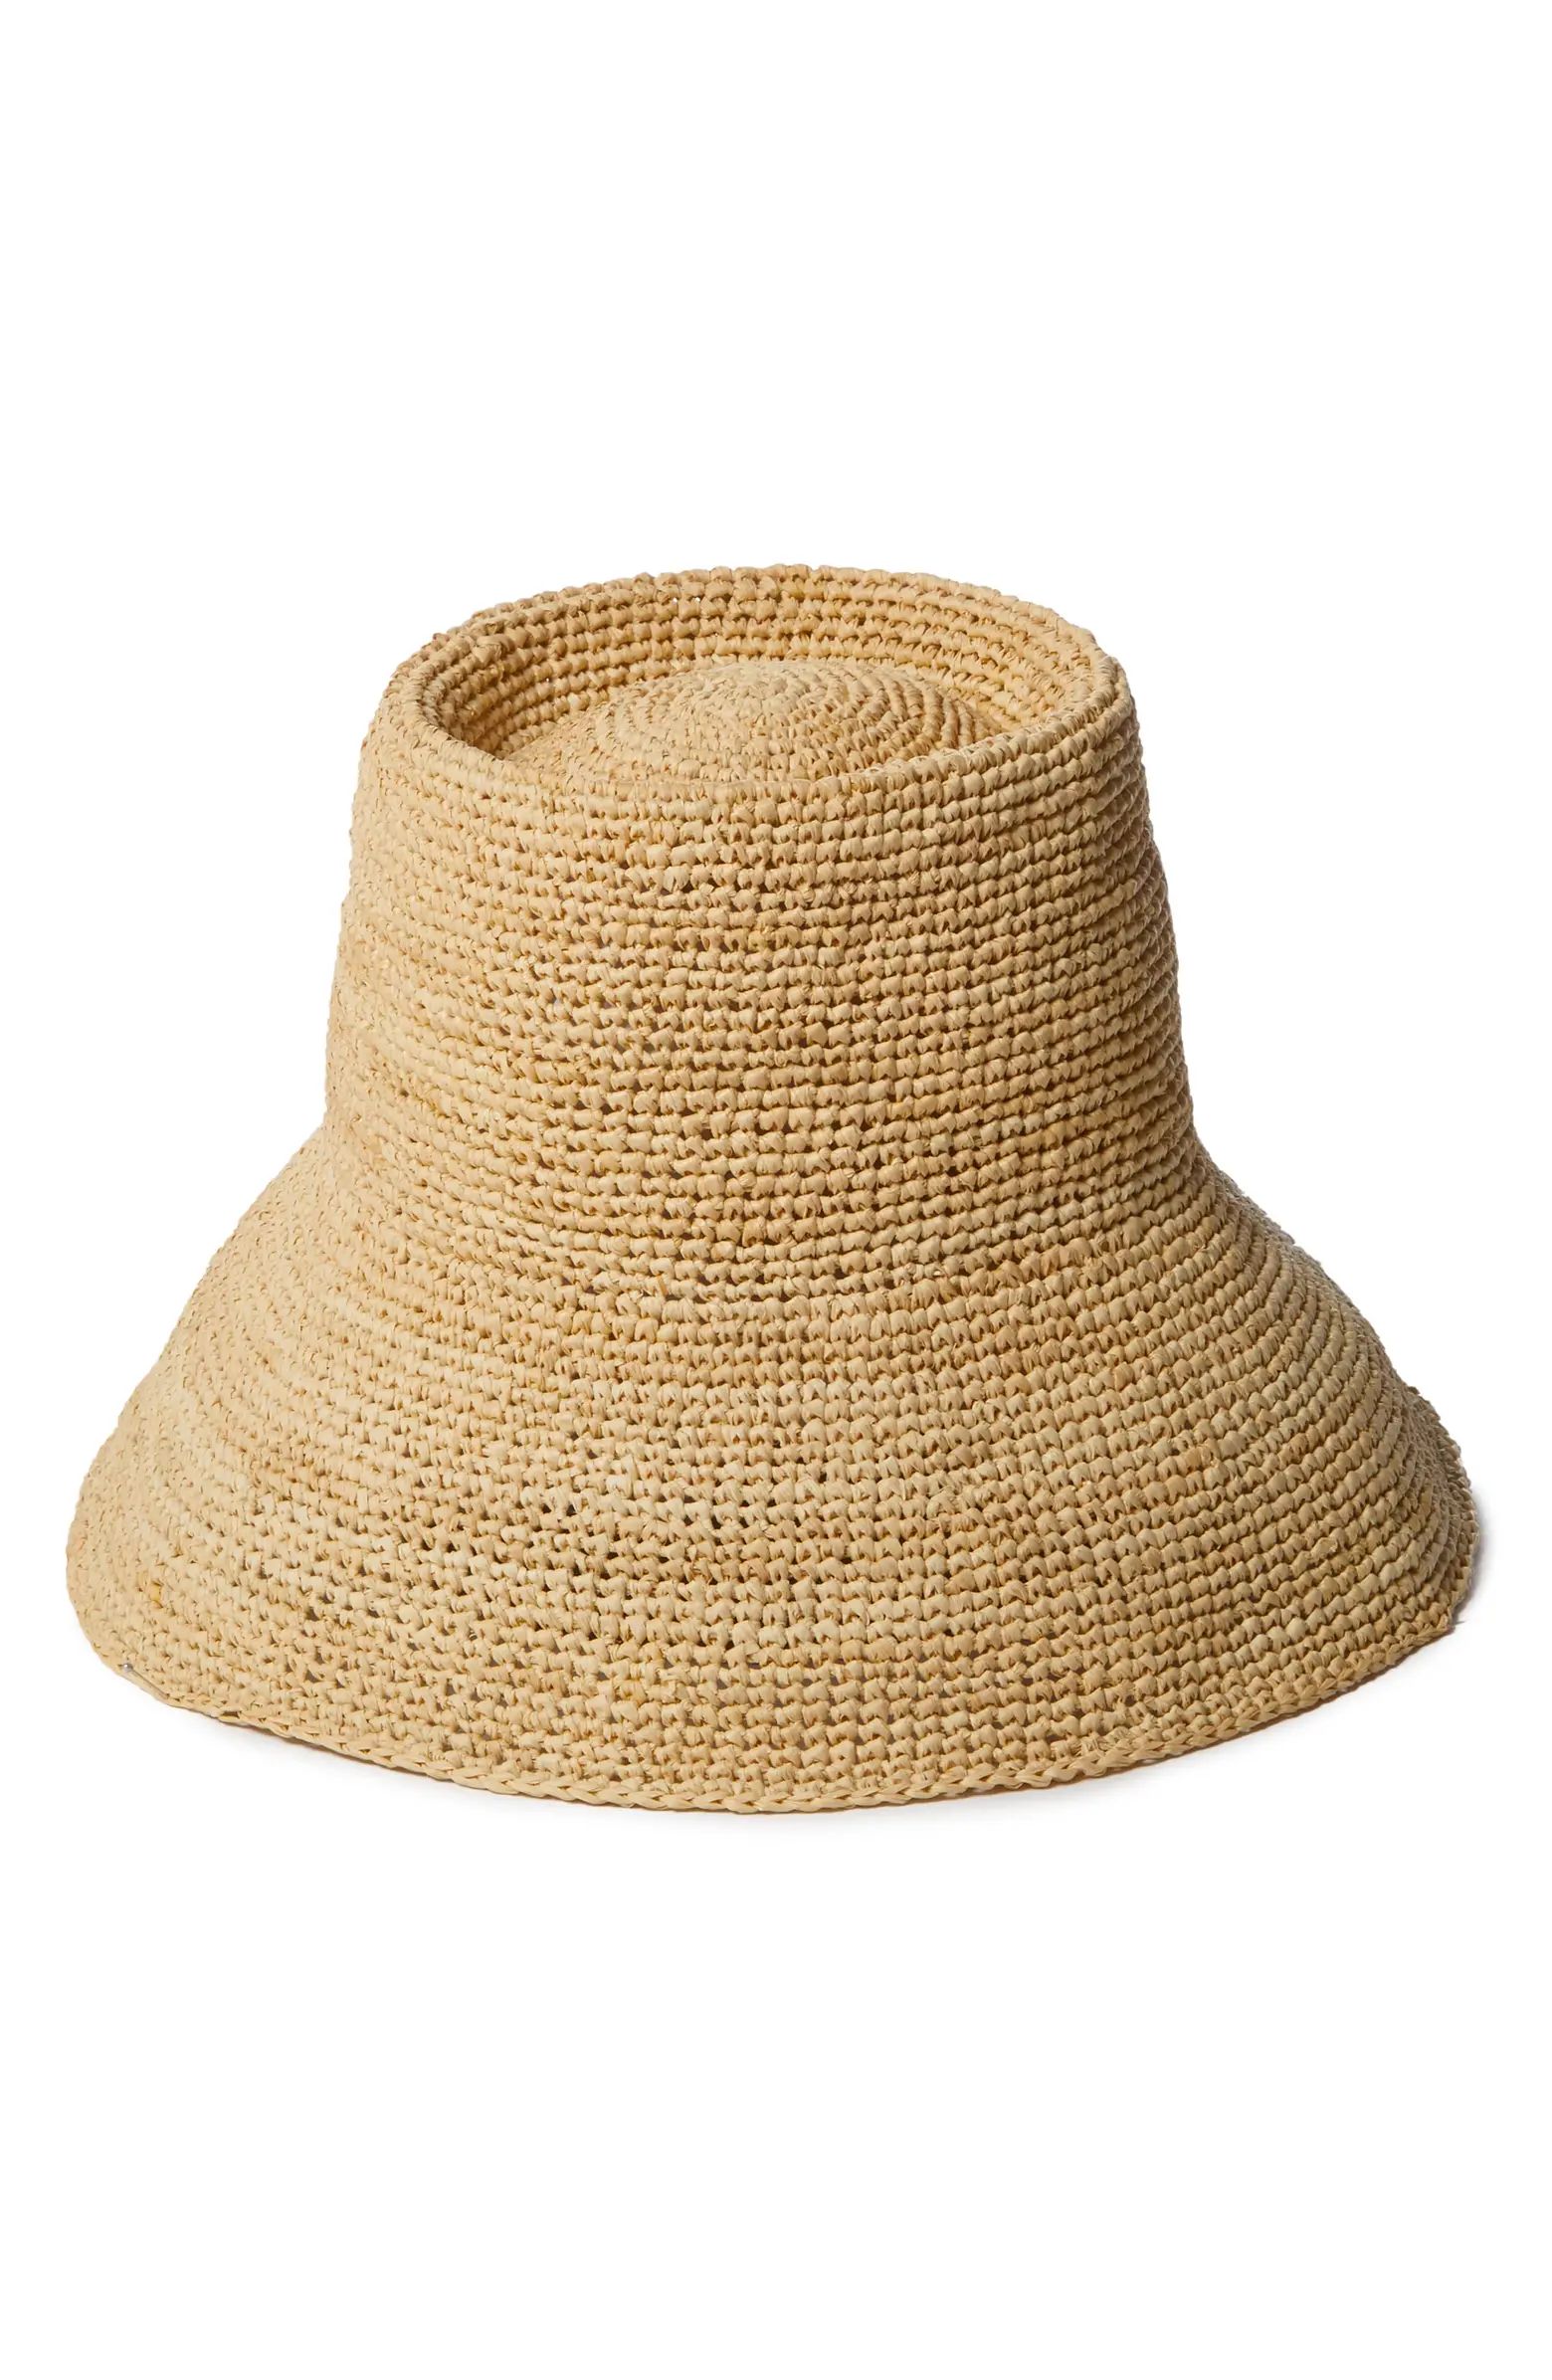 Janessa Leoné Felix Crochet Raffia Bucket Hat | Nordstrom | Nordstrom